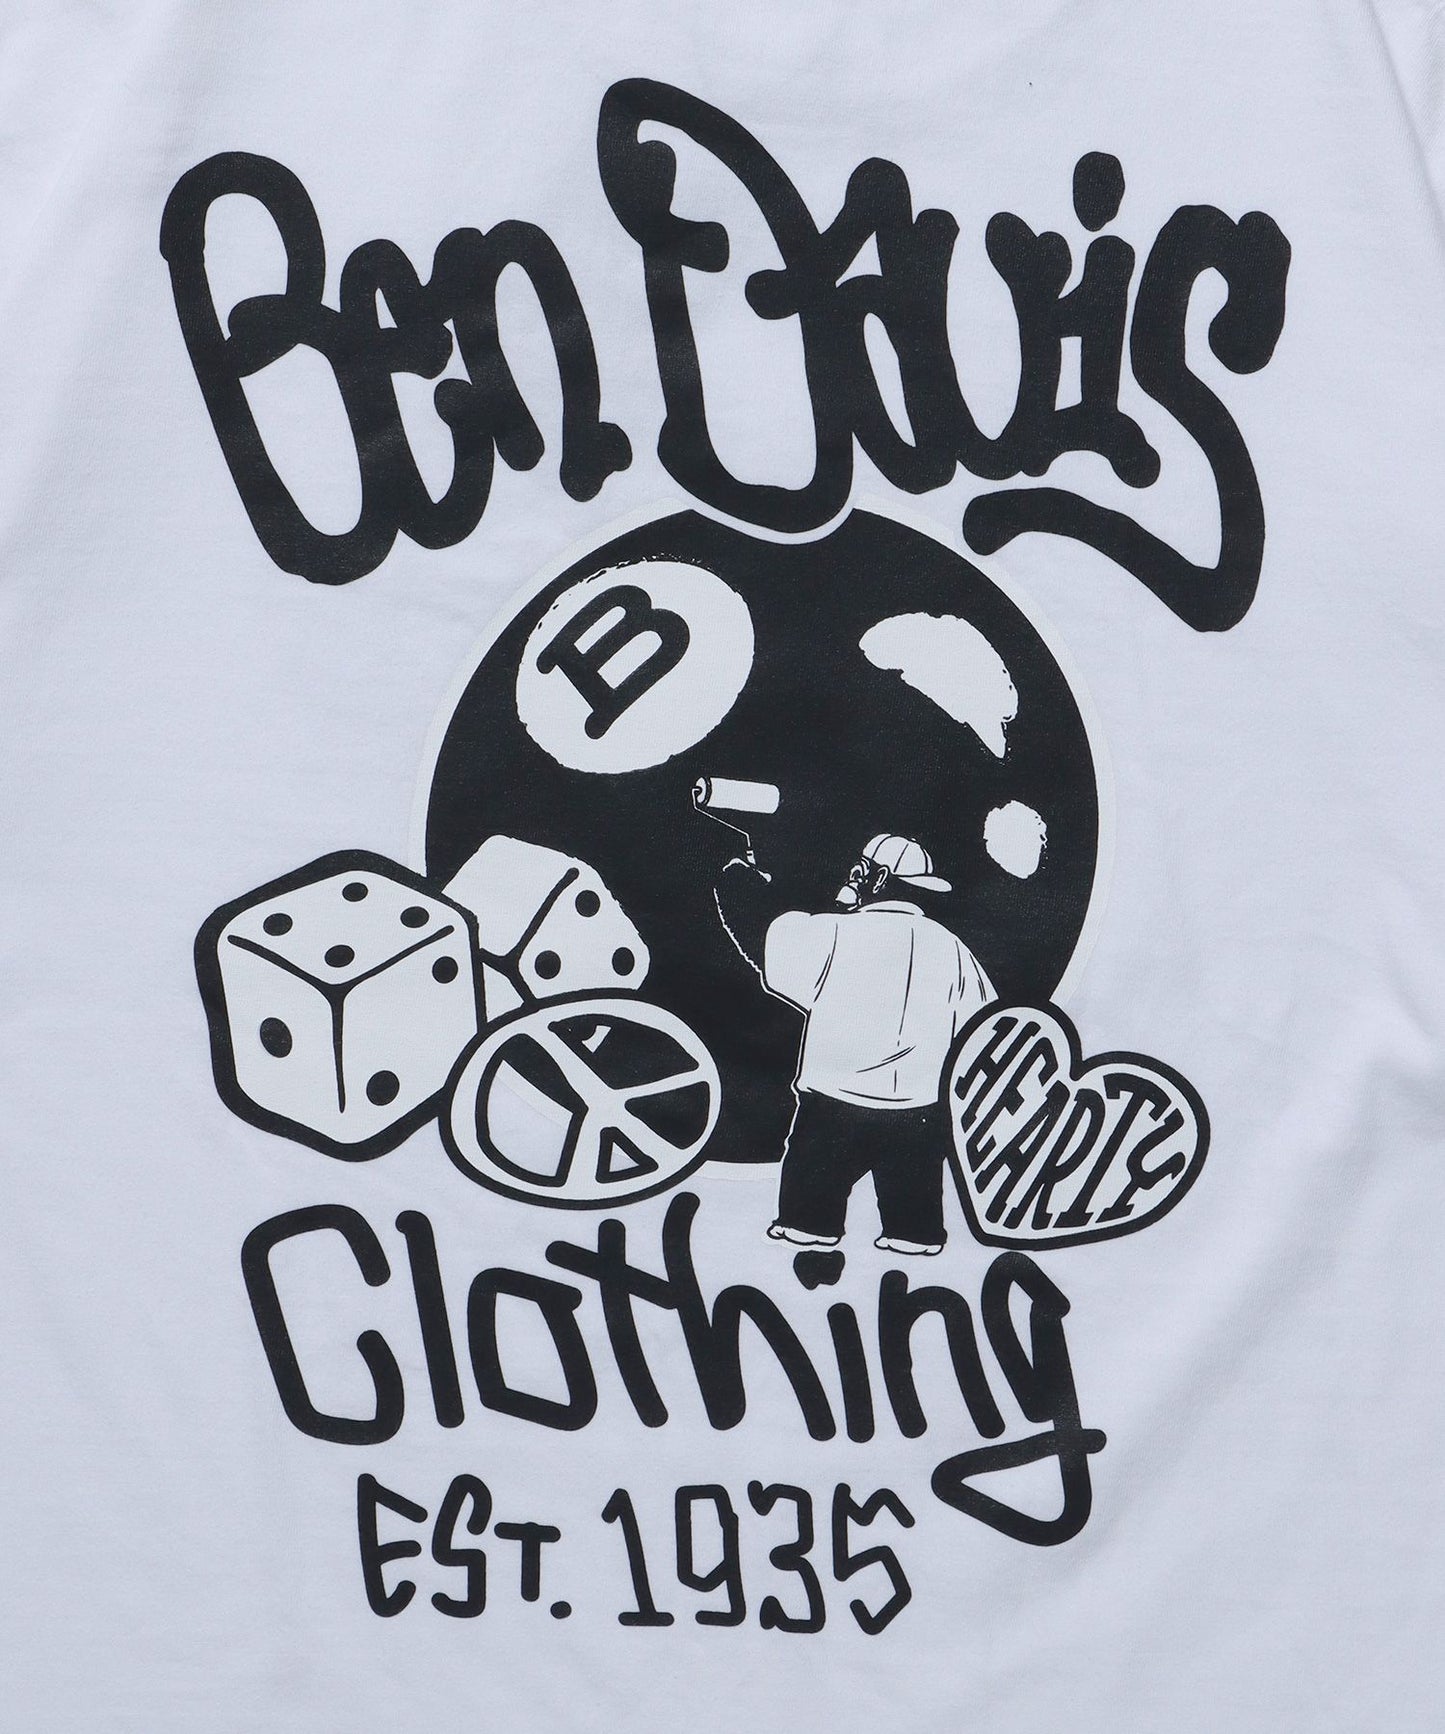 BALL ETC VNTG TEE / クルーネック 半袖Tシャツ ハッピー モチーフ バップリント 胸ワンポイント Tシャツ 8ボール ホワイト